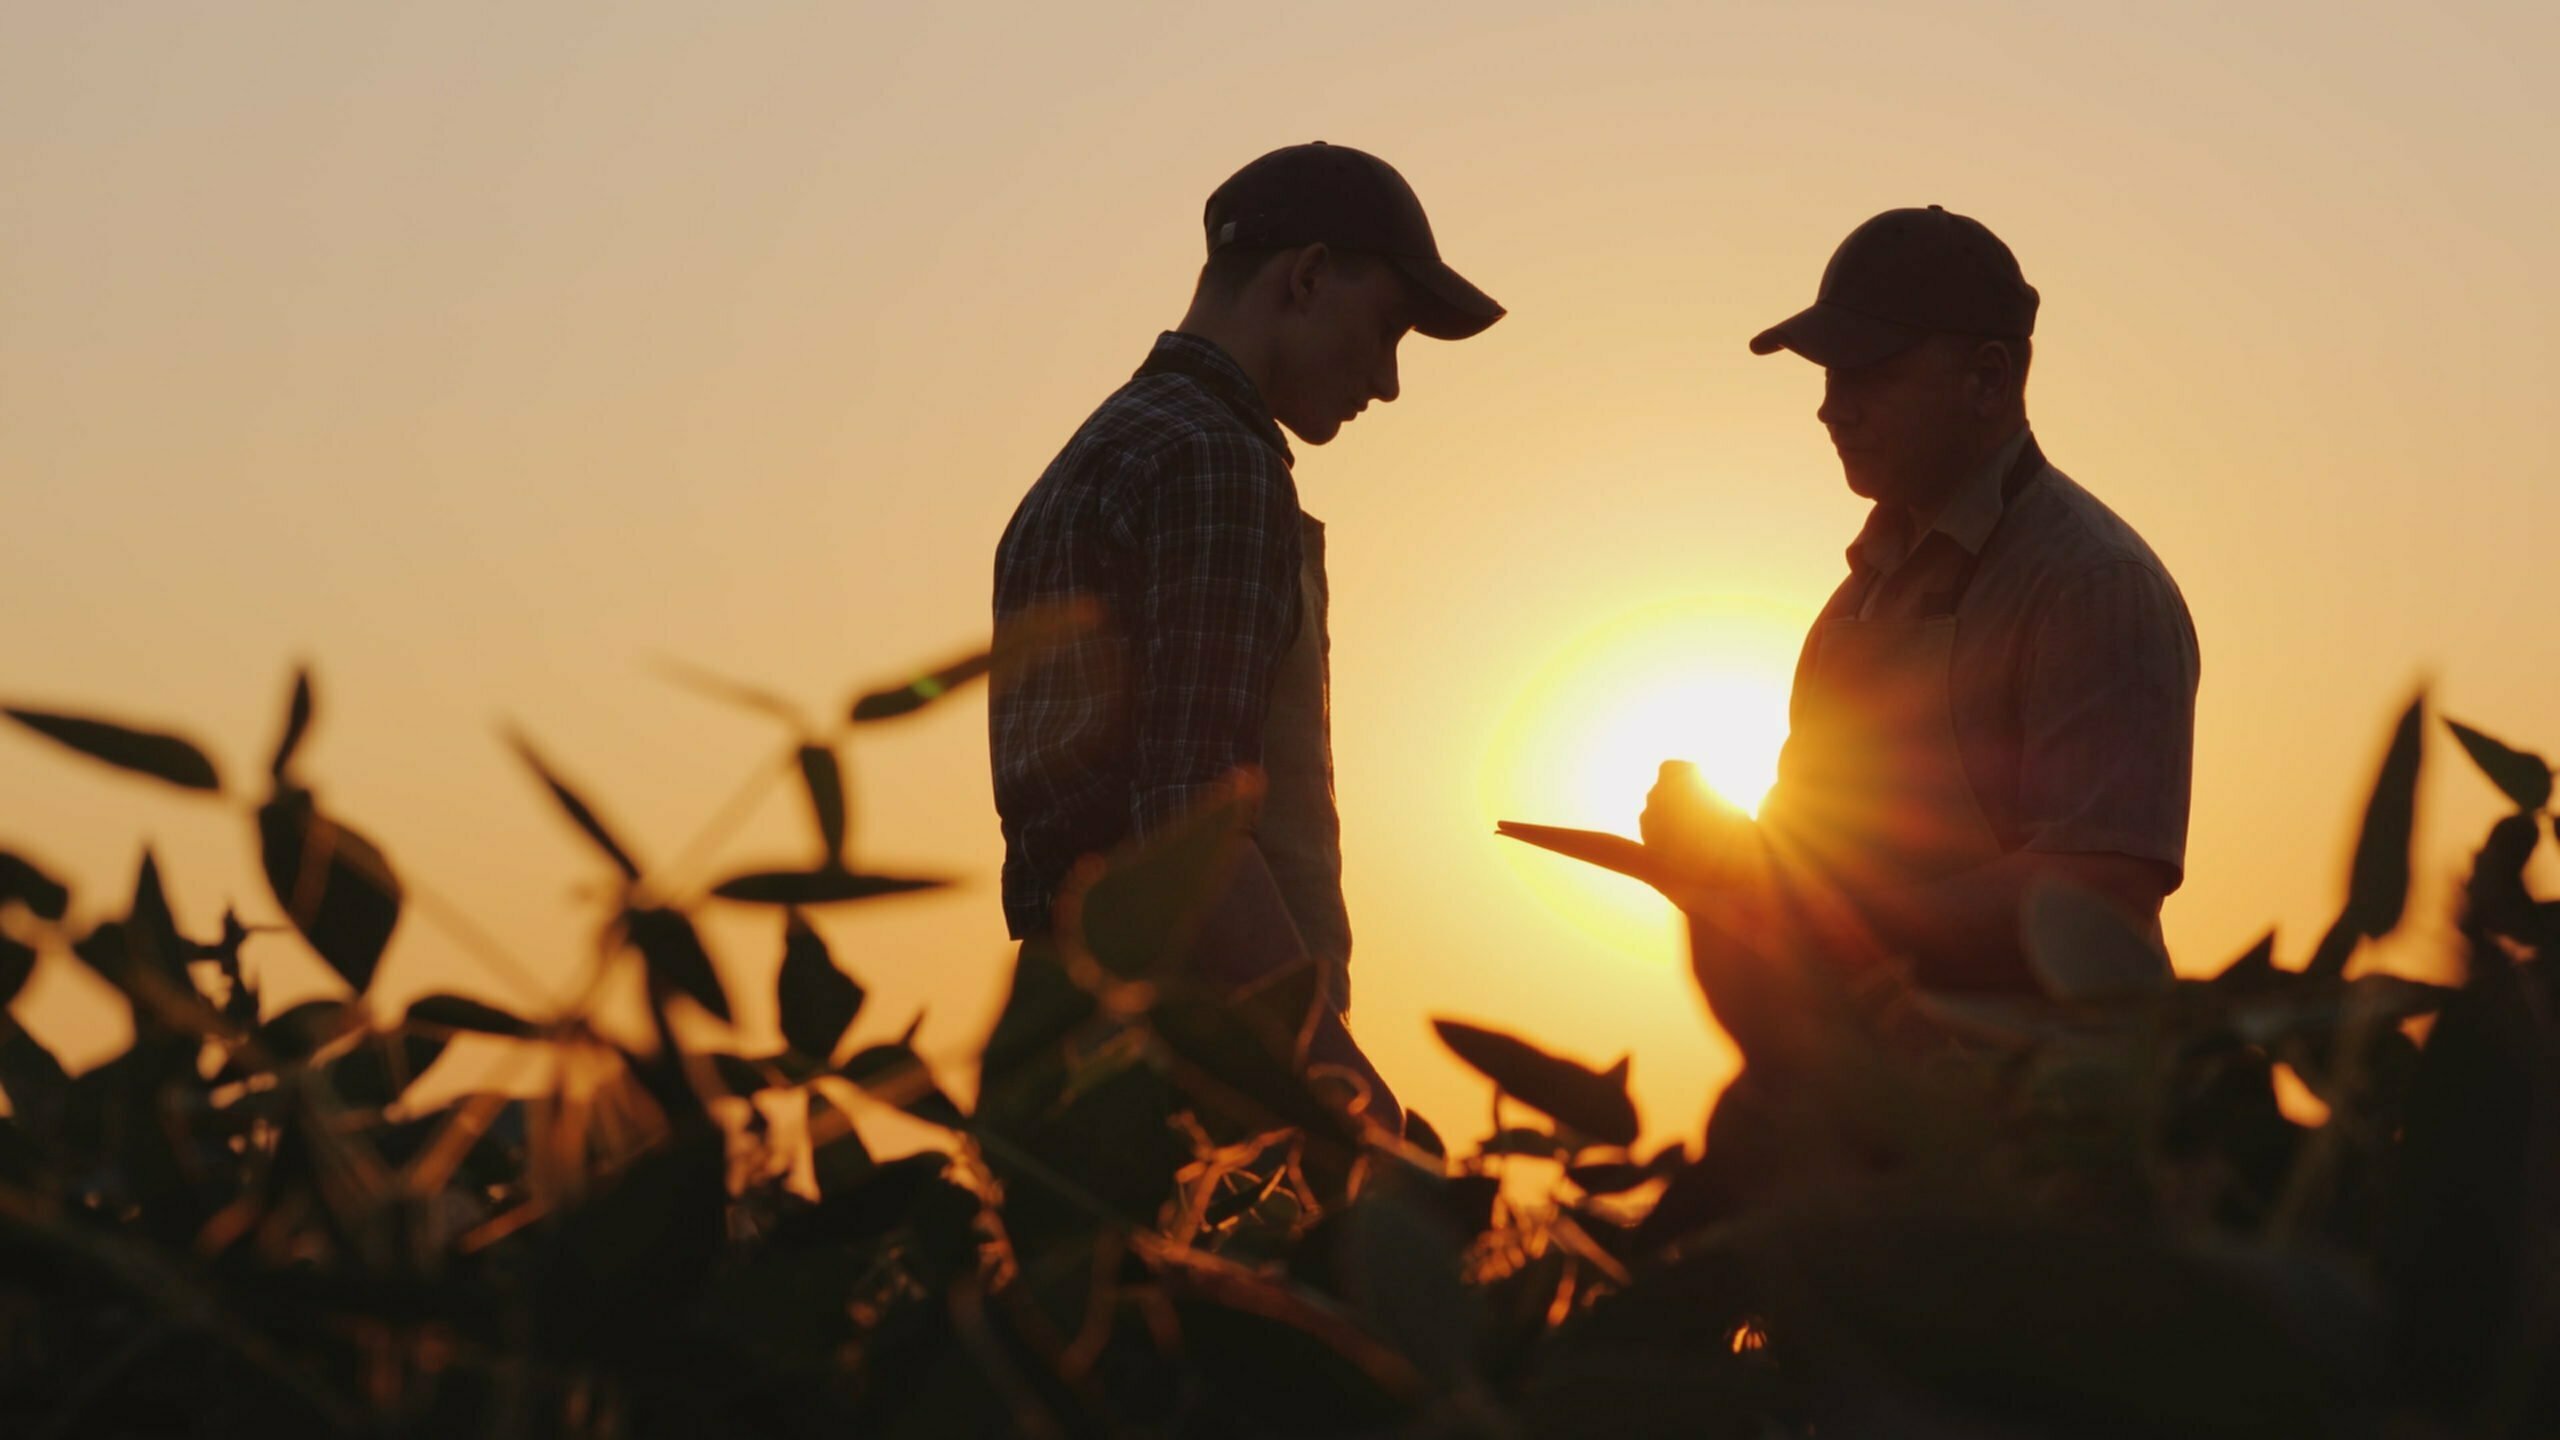 Two farmers talking in the field